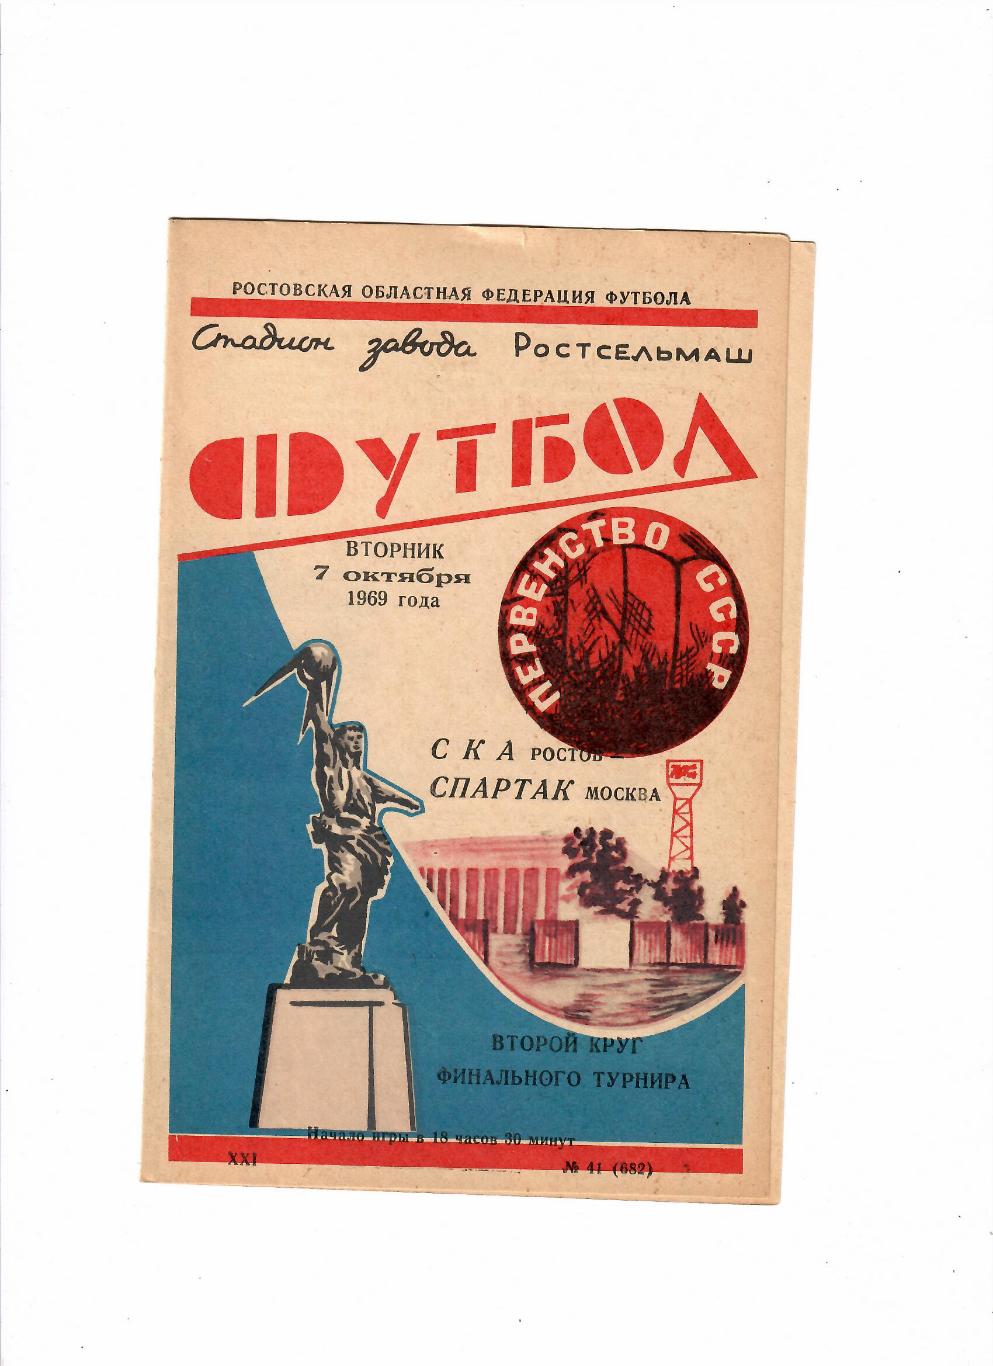 СКА Ростов-Спартак Москва 1969